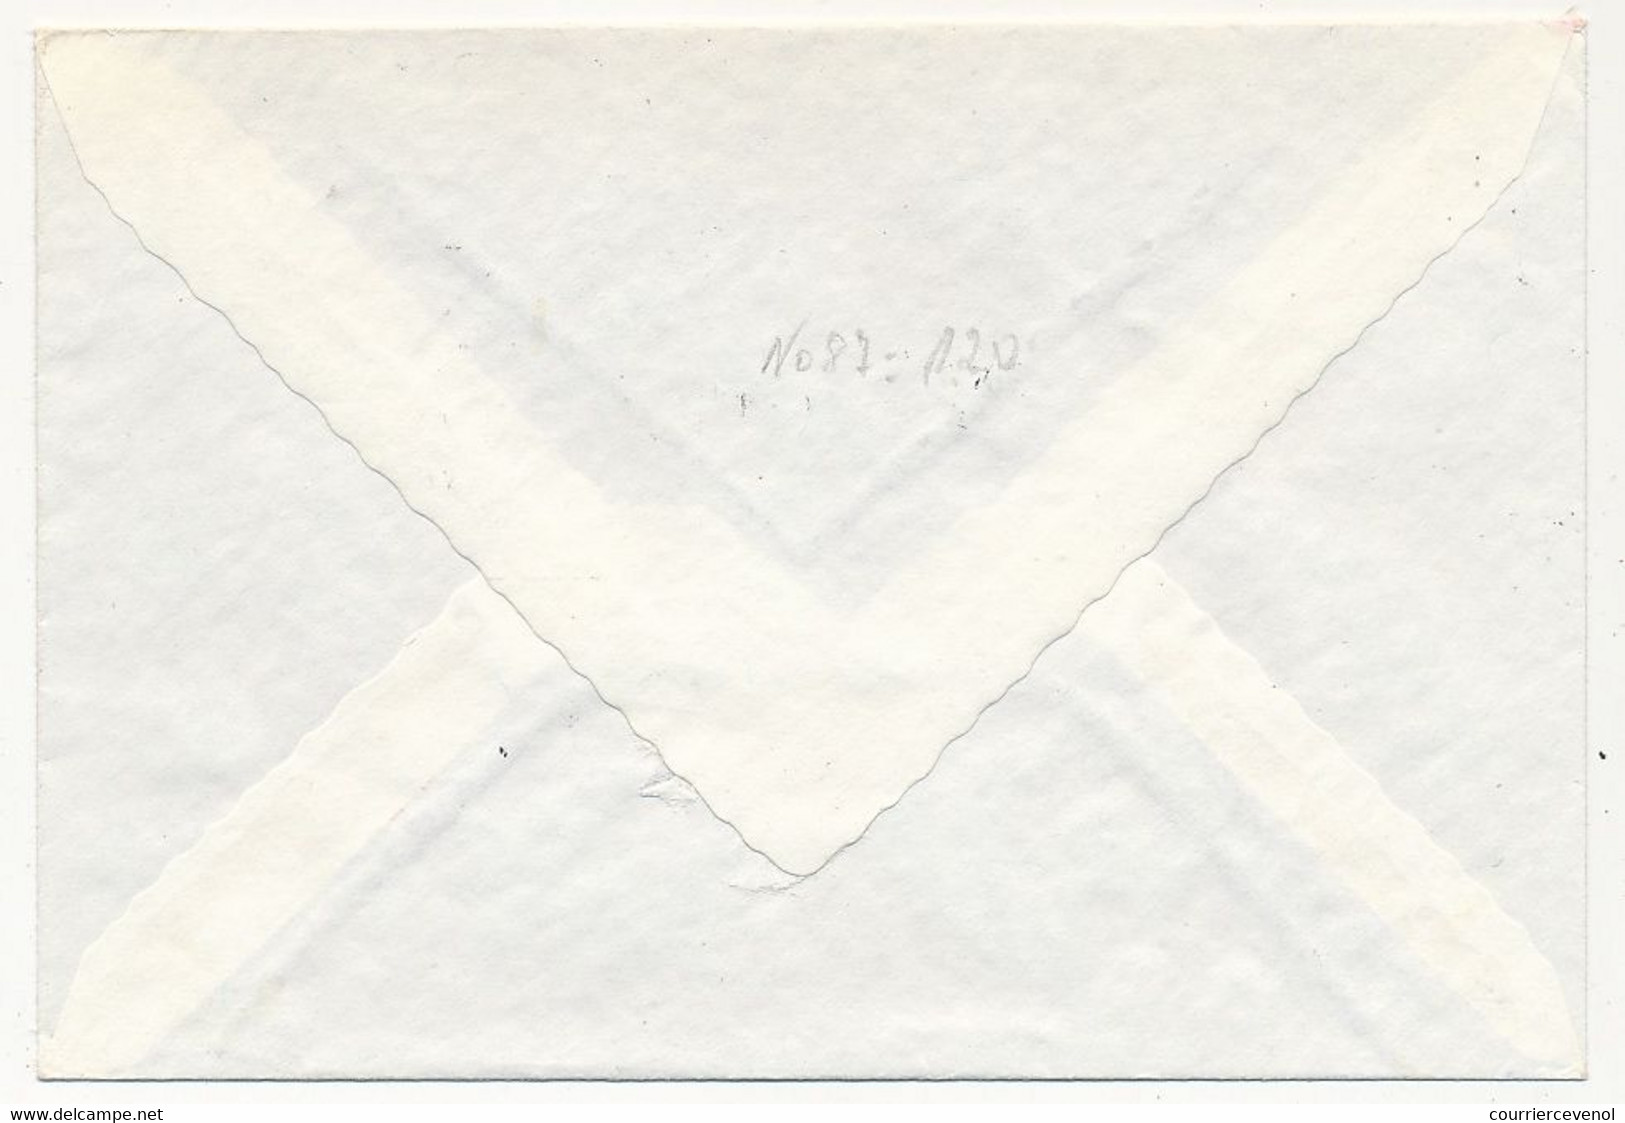 GROENLAND - 8 enveloppes Affranchissements composés divers, recommandées, années 1973 à 1979